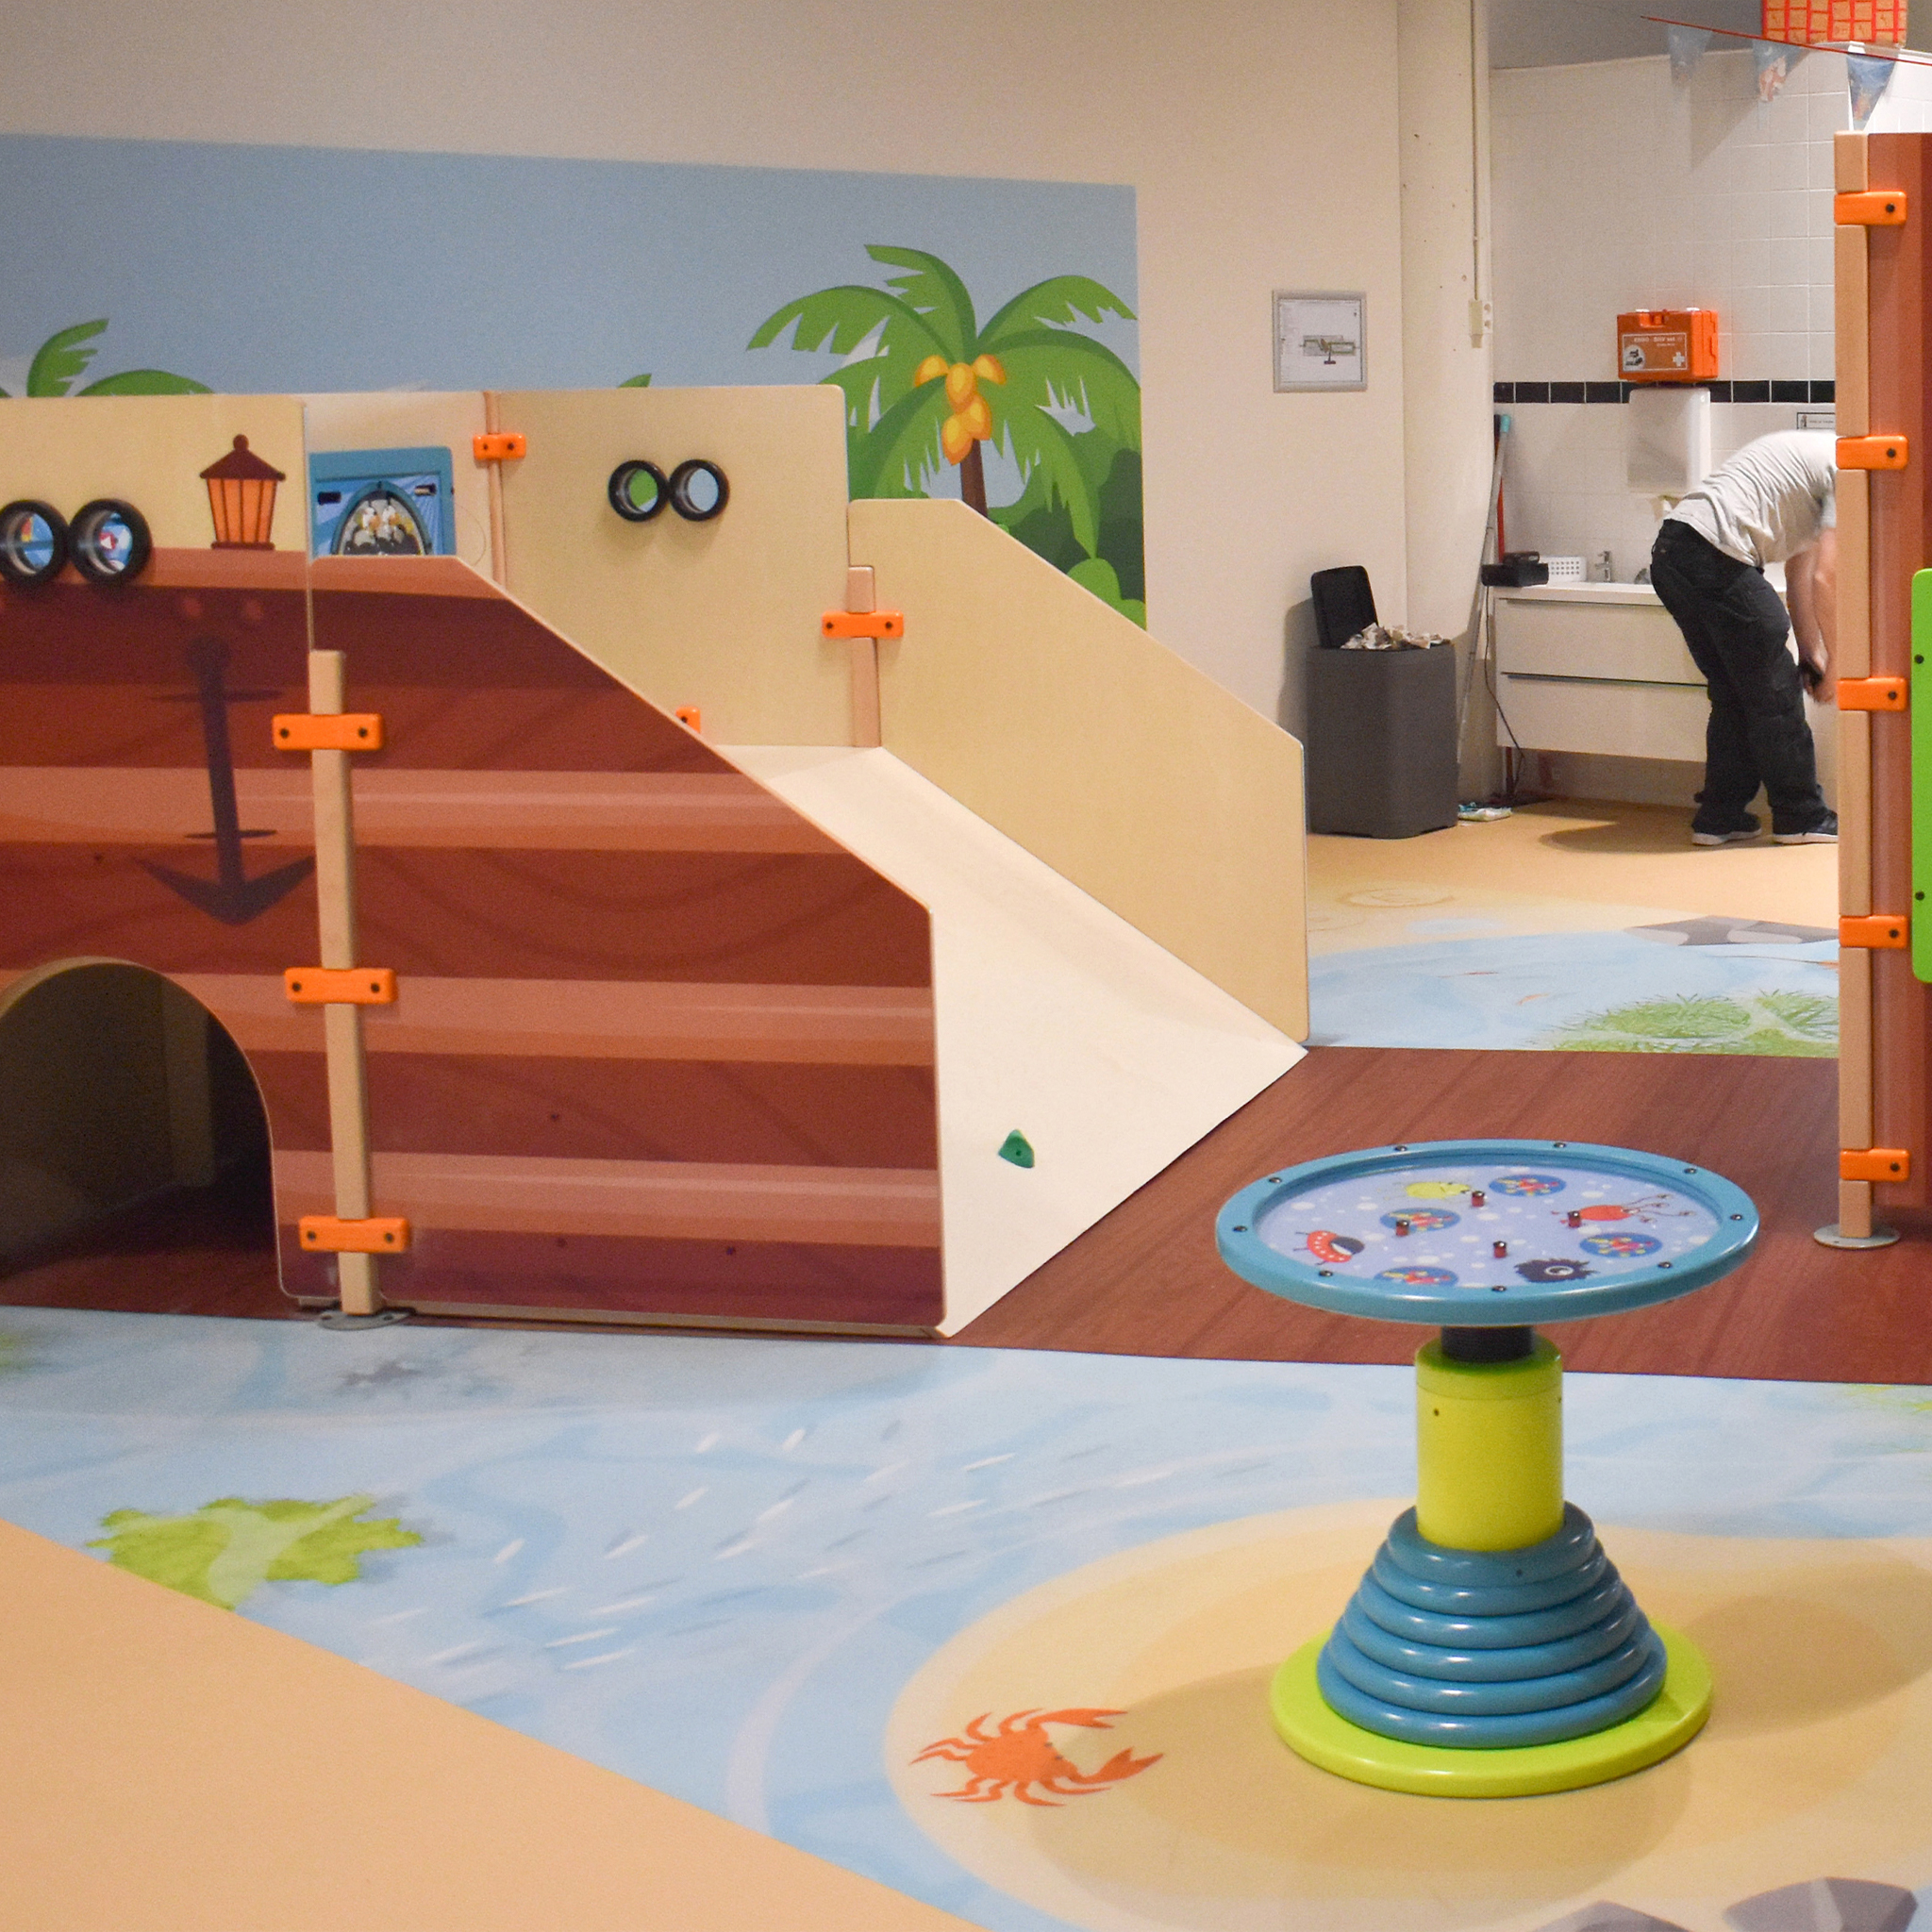 Ein Vinylboden in einer Kindertagesstätte schafft eine einzigartige Erfahrung für Kinder